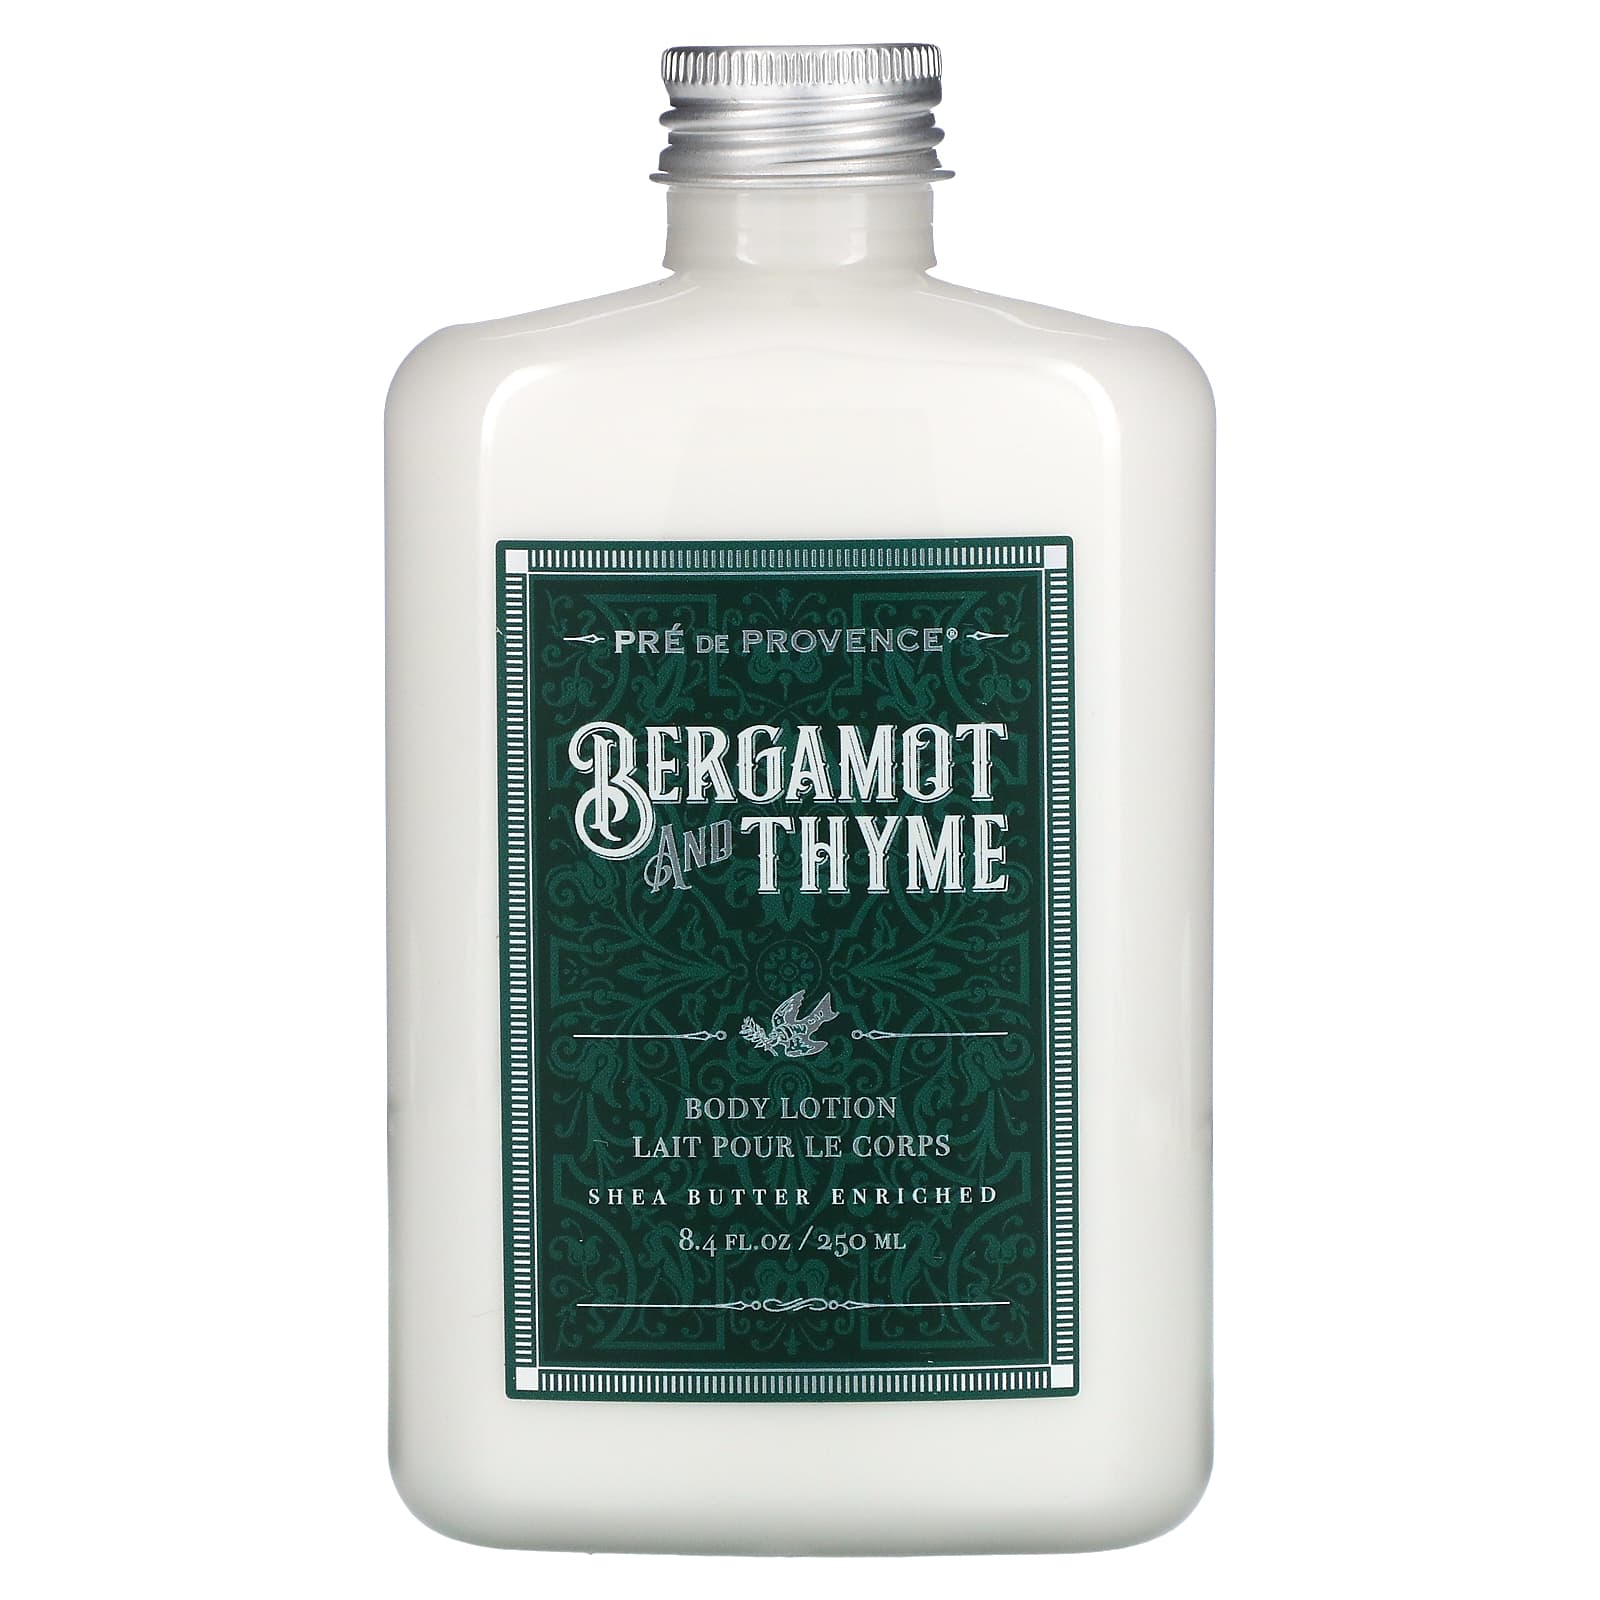 European Soaps, Body Lotion, Bergamot and Thyme (250 ml)